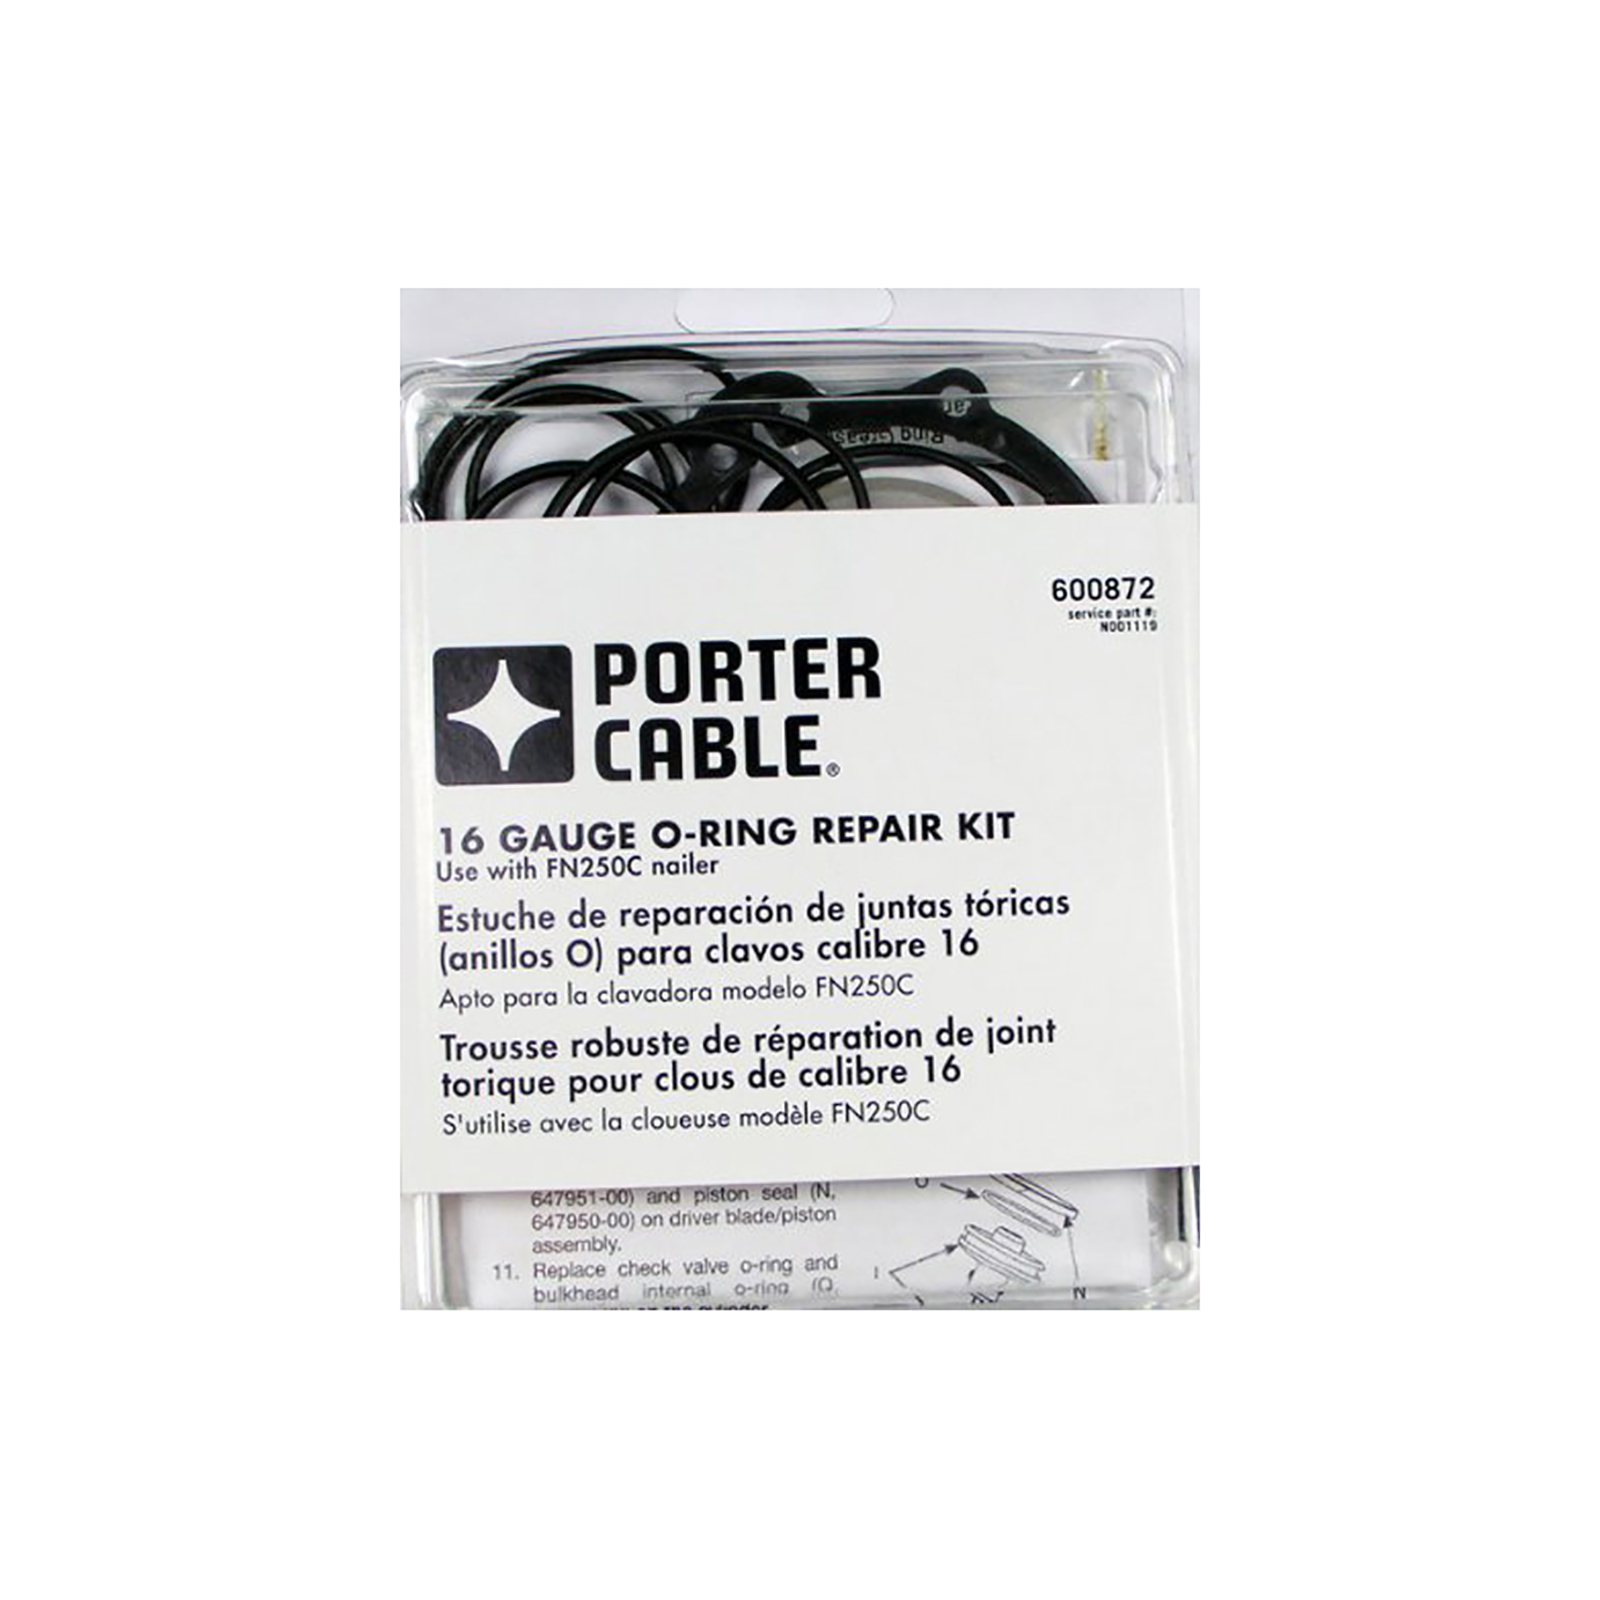 Porter Cable Fabricant de matériel informatique d'origine de remplacement 886085 cloueur O-Ring Bobine 200 FN250A RN17